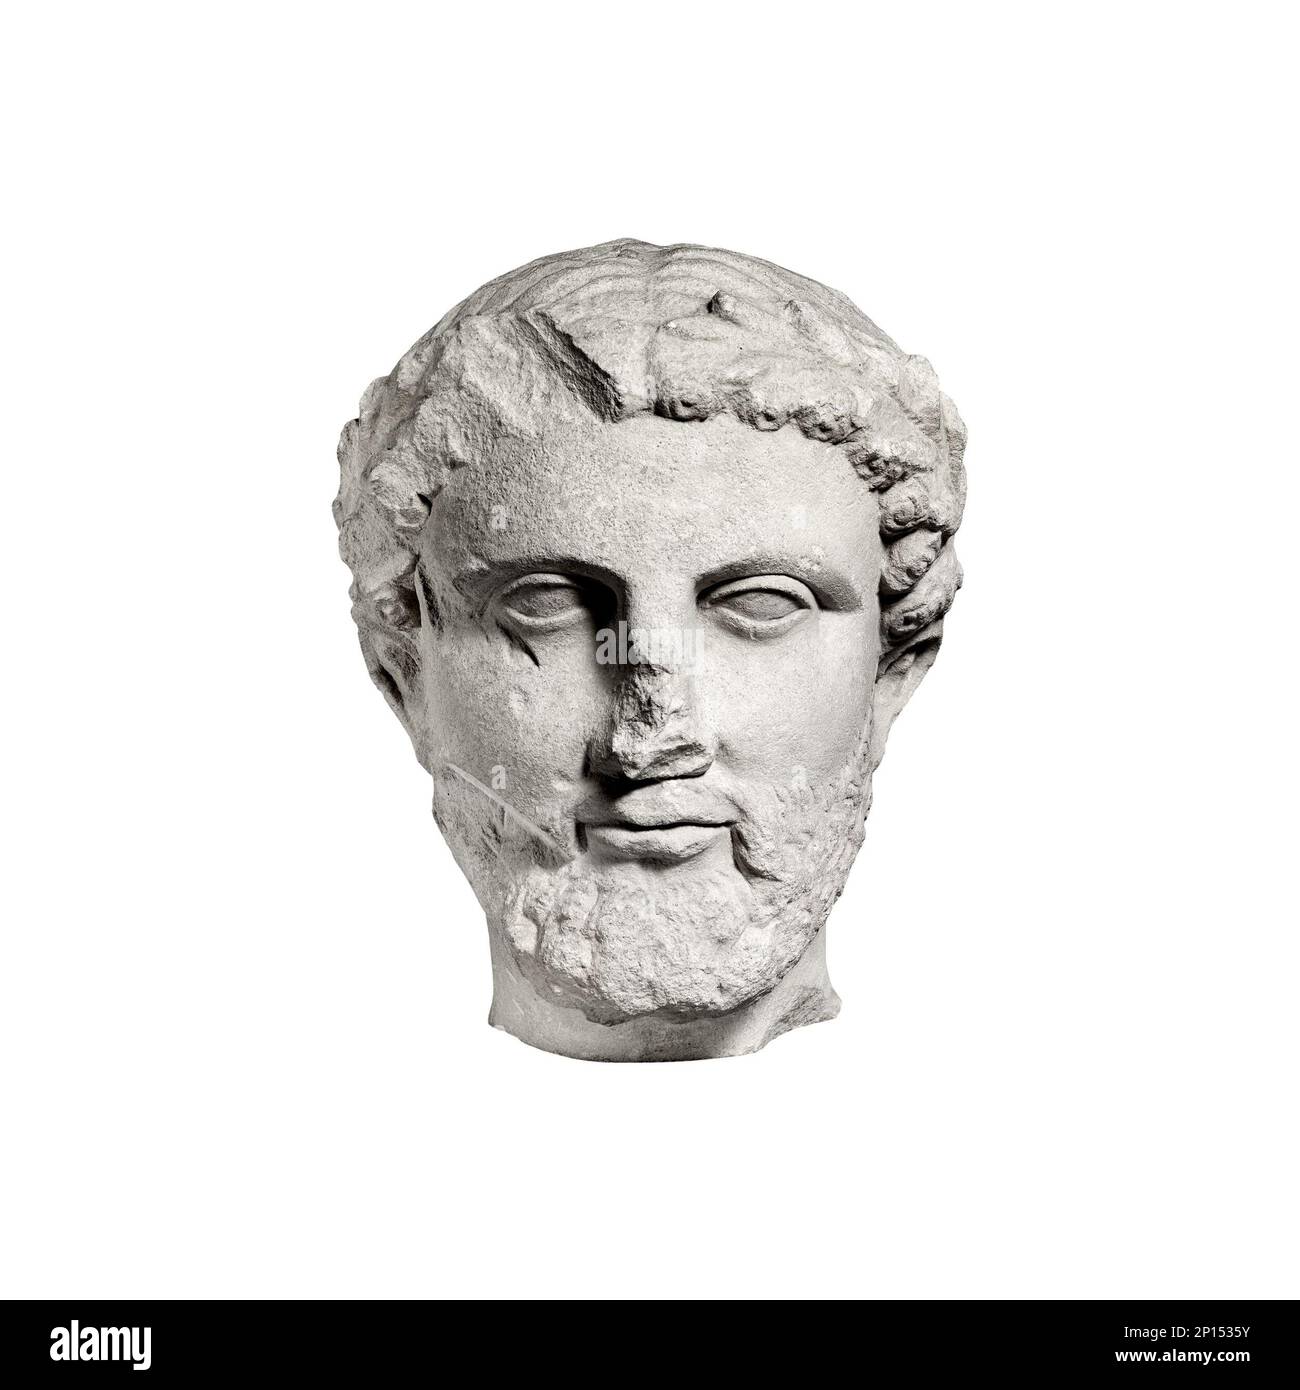 Tête de philosophe grec classique antique vue de face isolée, tête d'homme barbu en calcaire noir et blanc avec une couronne de feuilles Banque D'Images